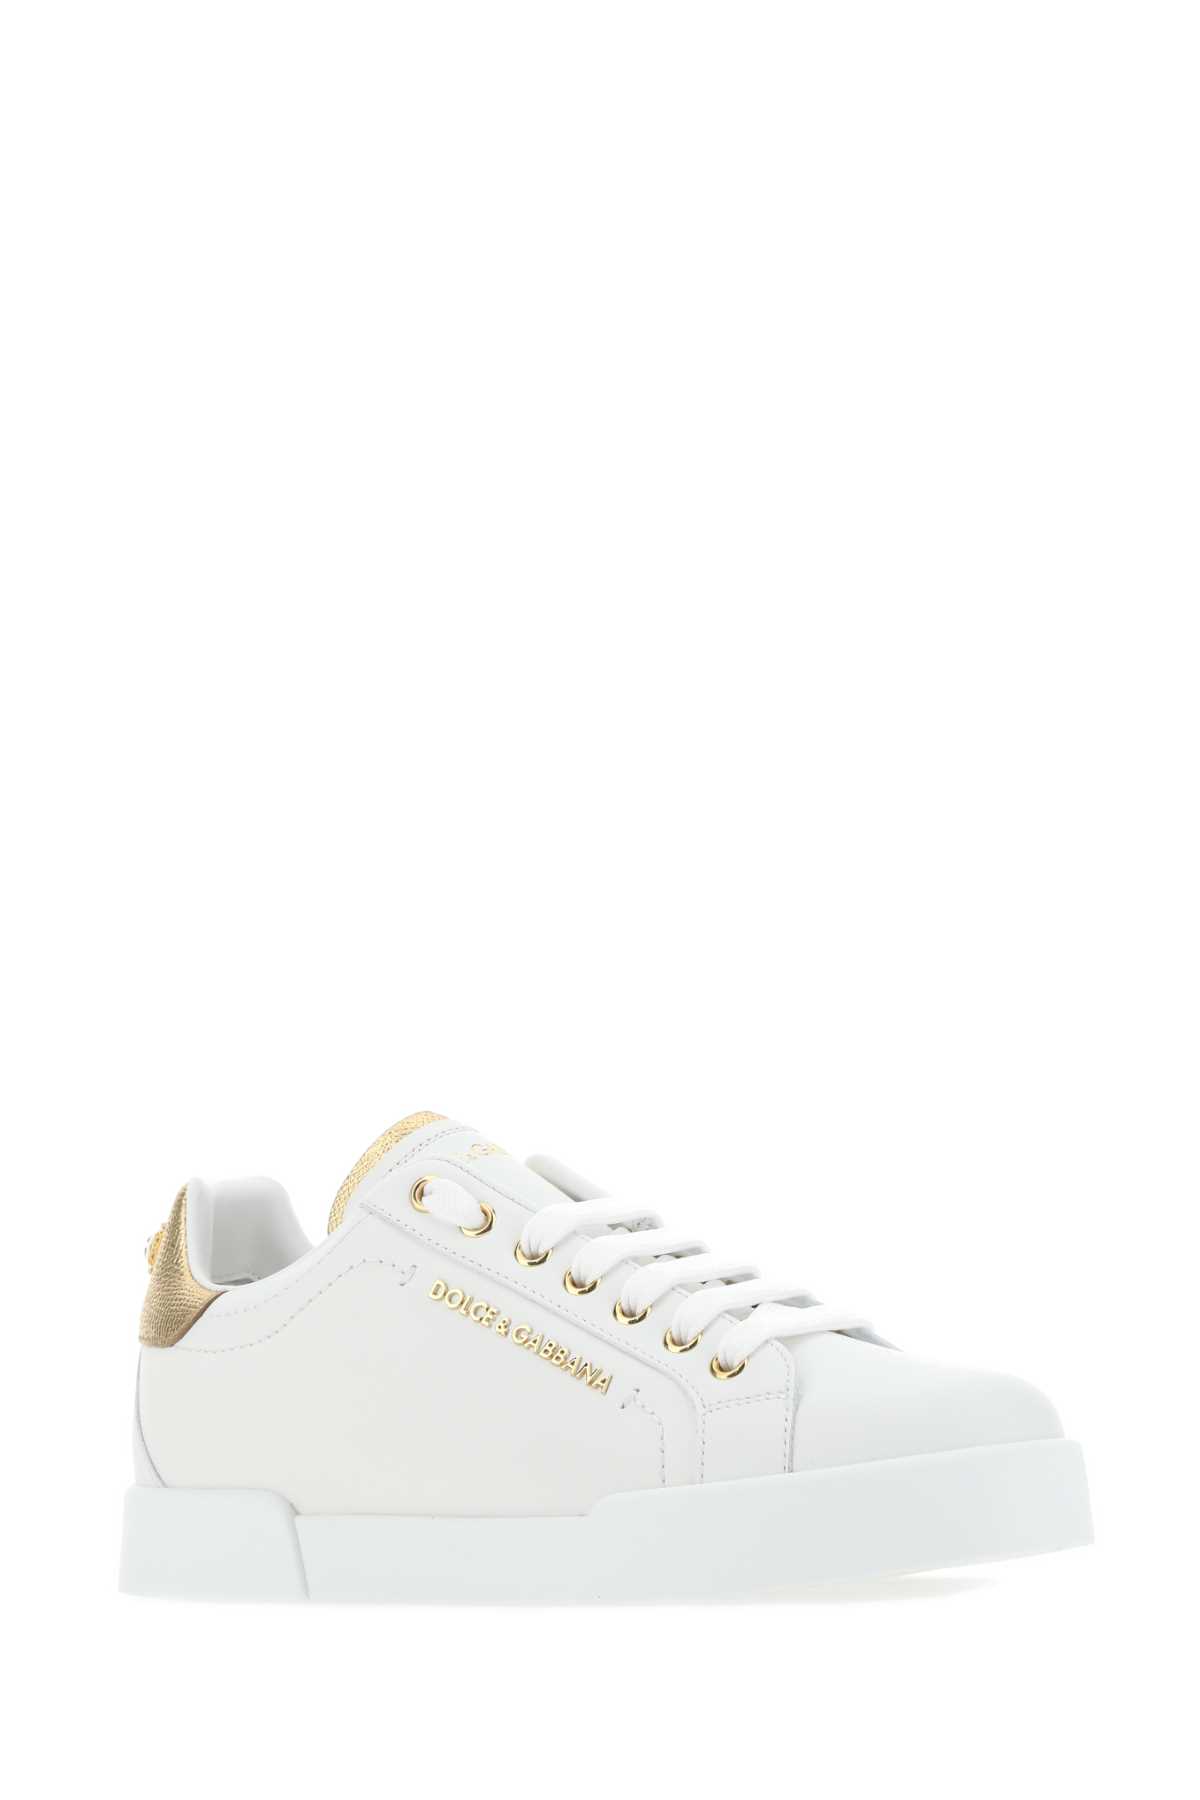 Shop Dolce & Gabbana White Nappa Leather Portofino Sneakers In 8b996